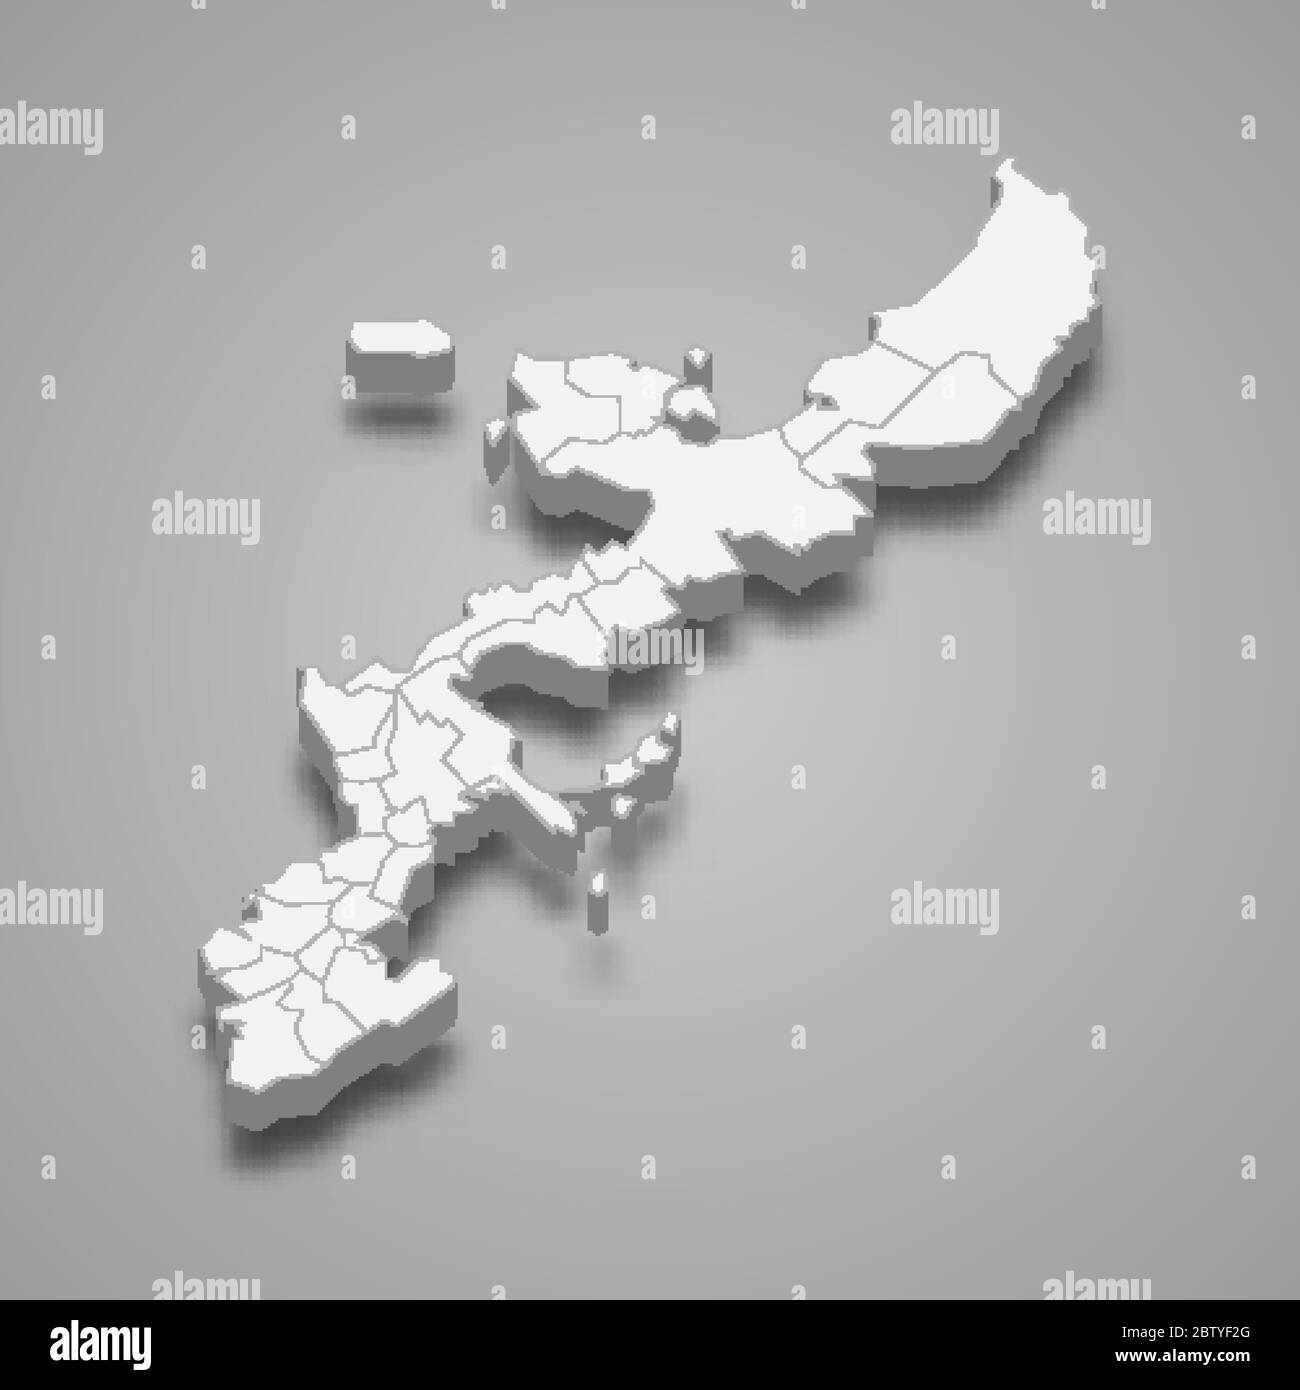 La carte 3d d'Okinawa est une préfecture du Japon Illustration de Vecteur